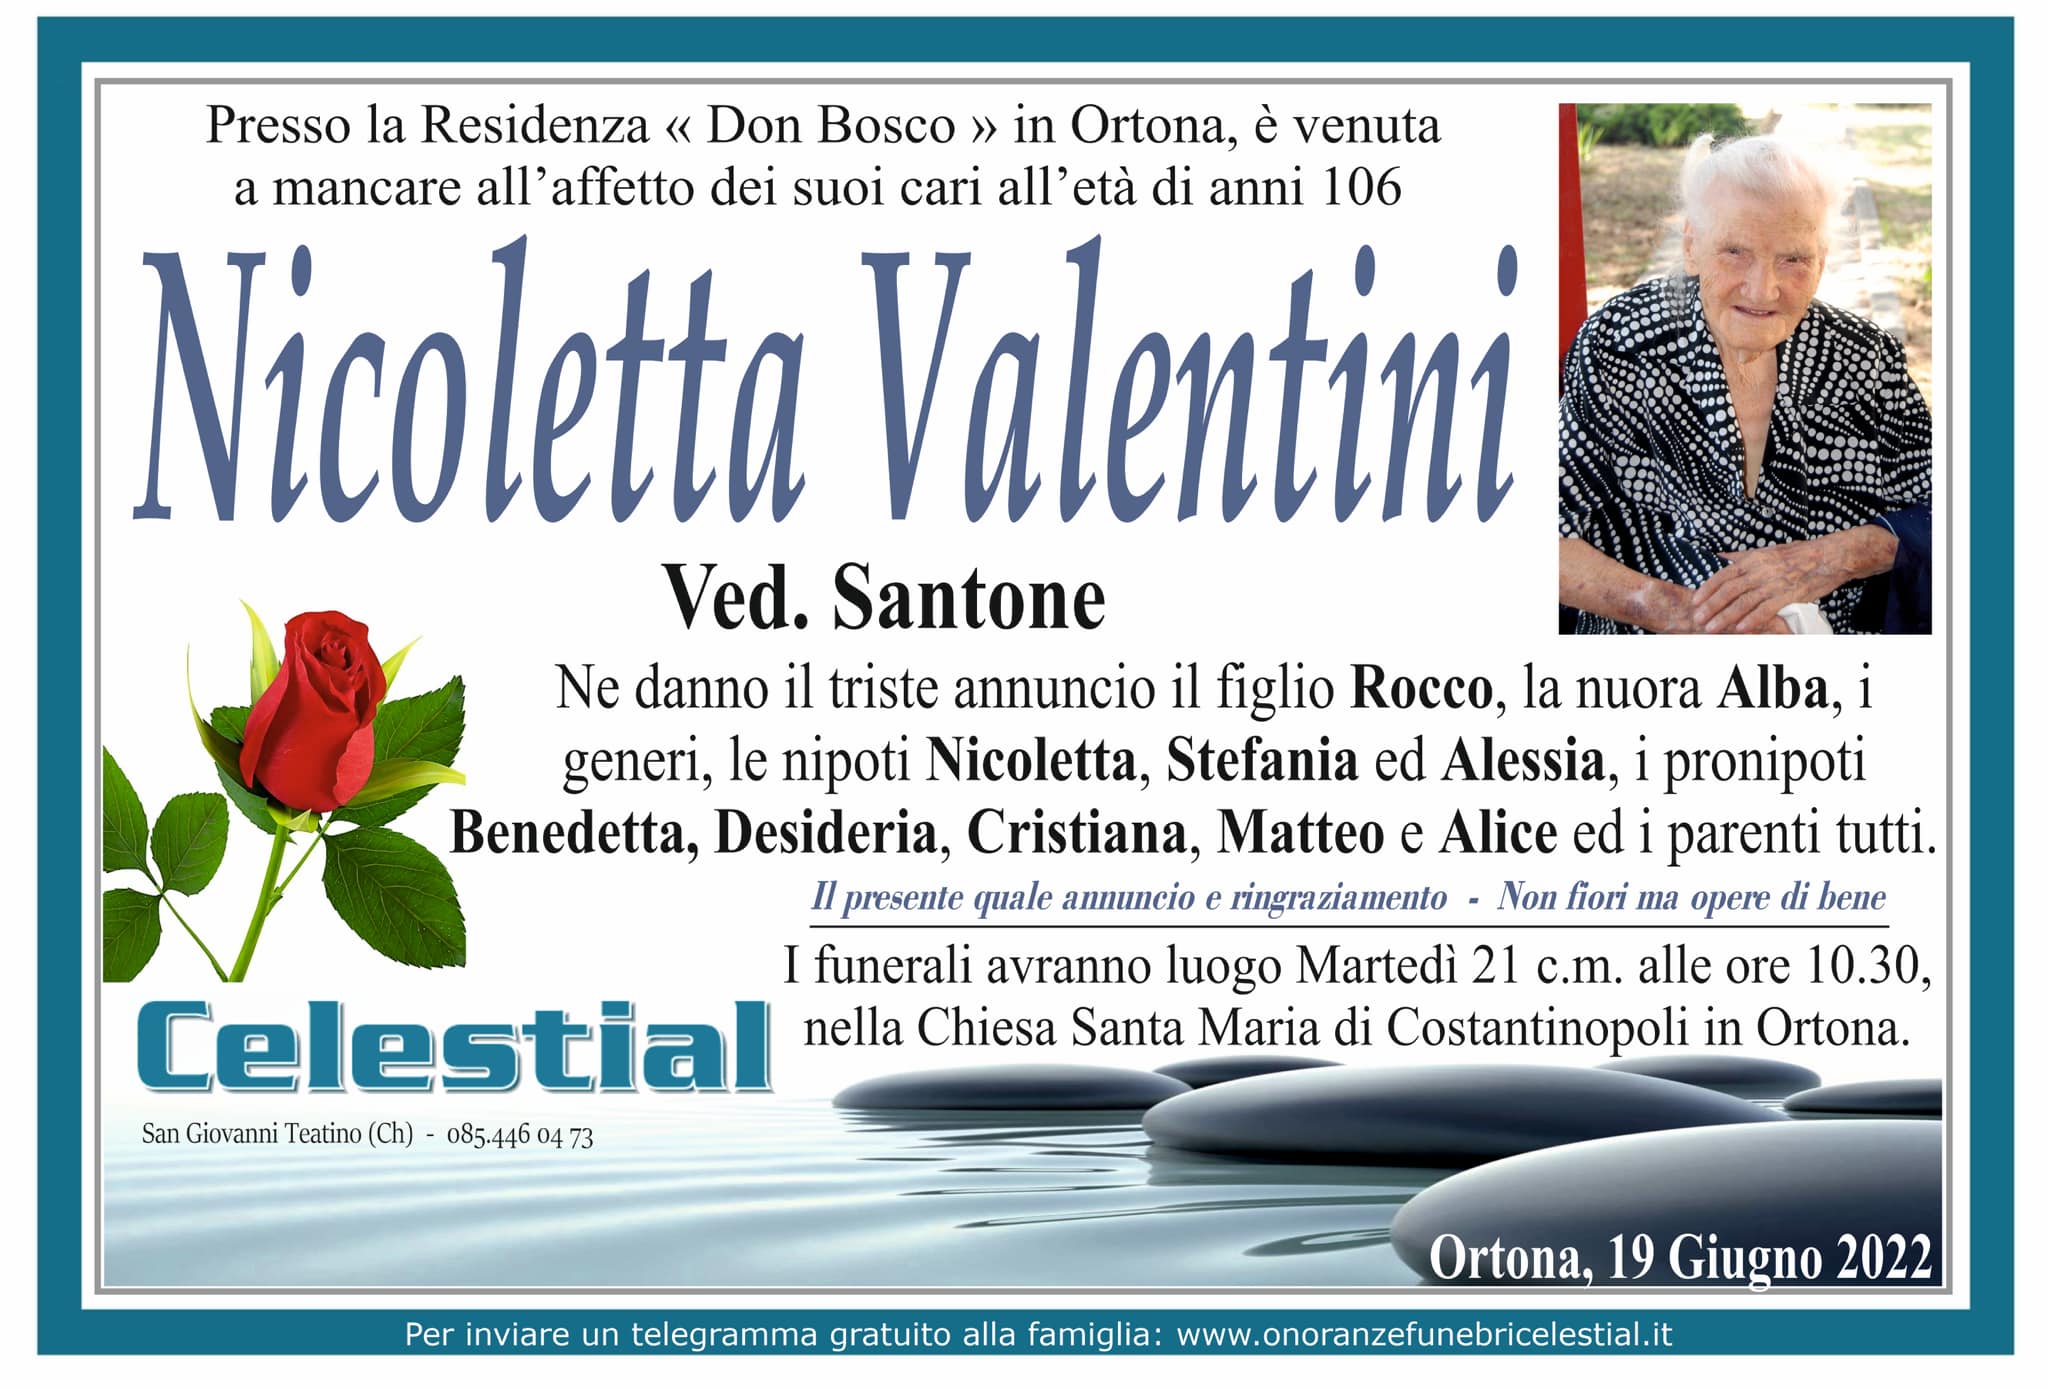 Nicoletta Valentini